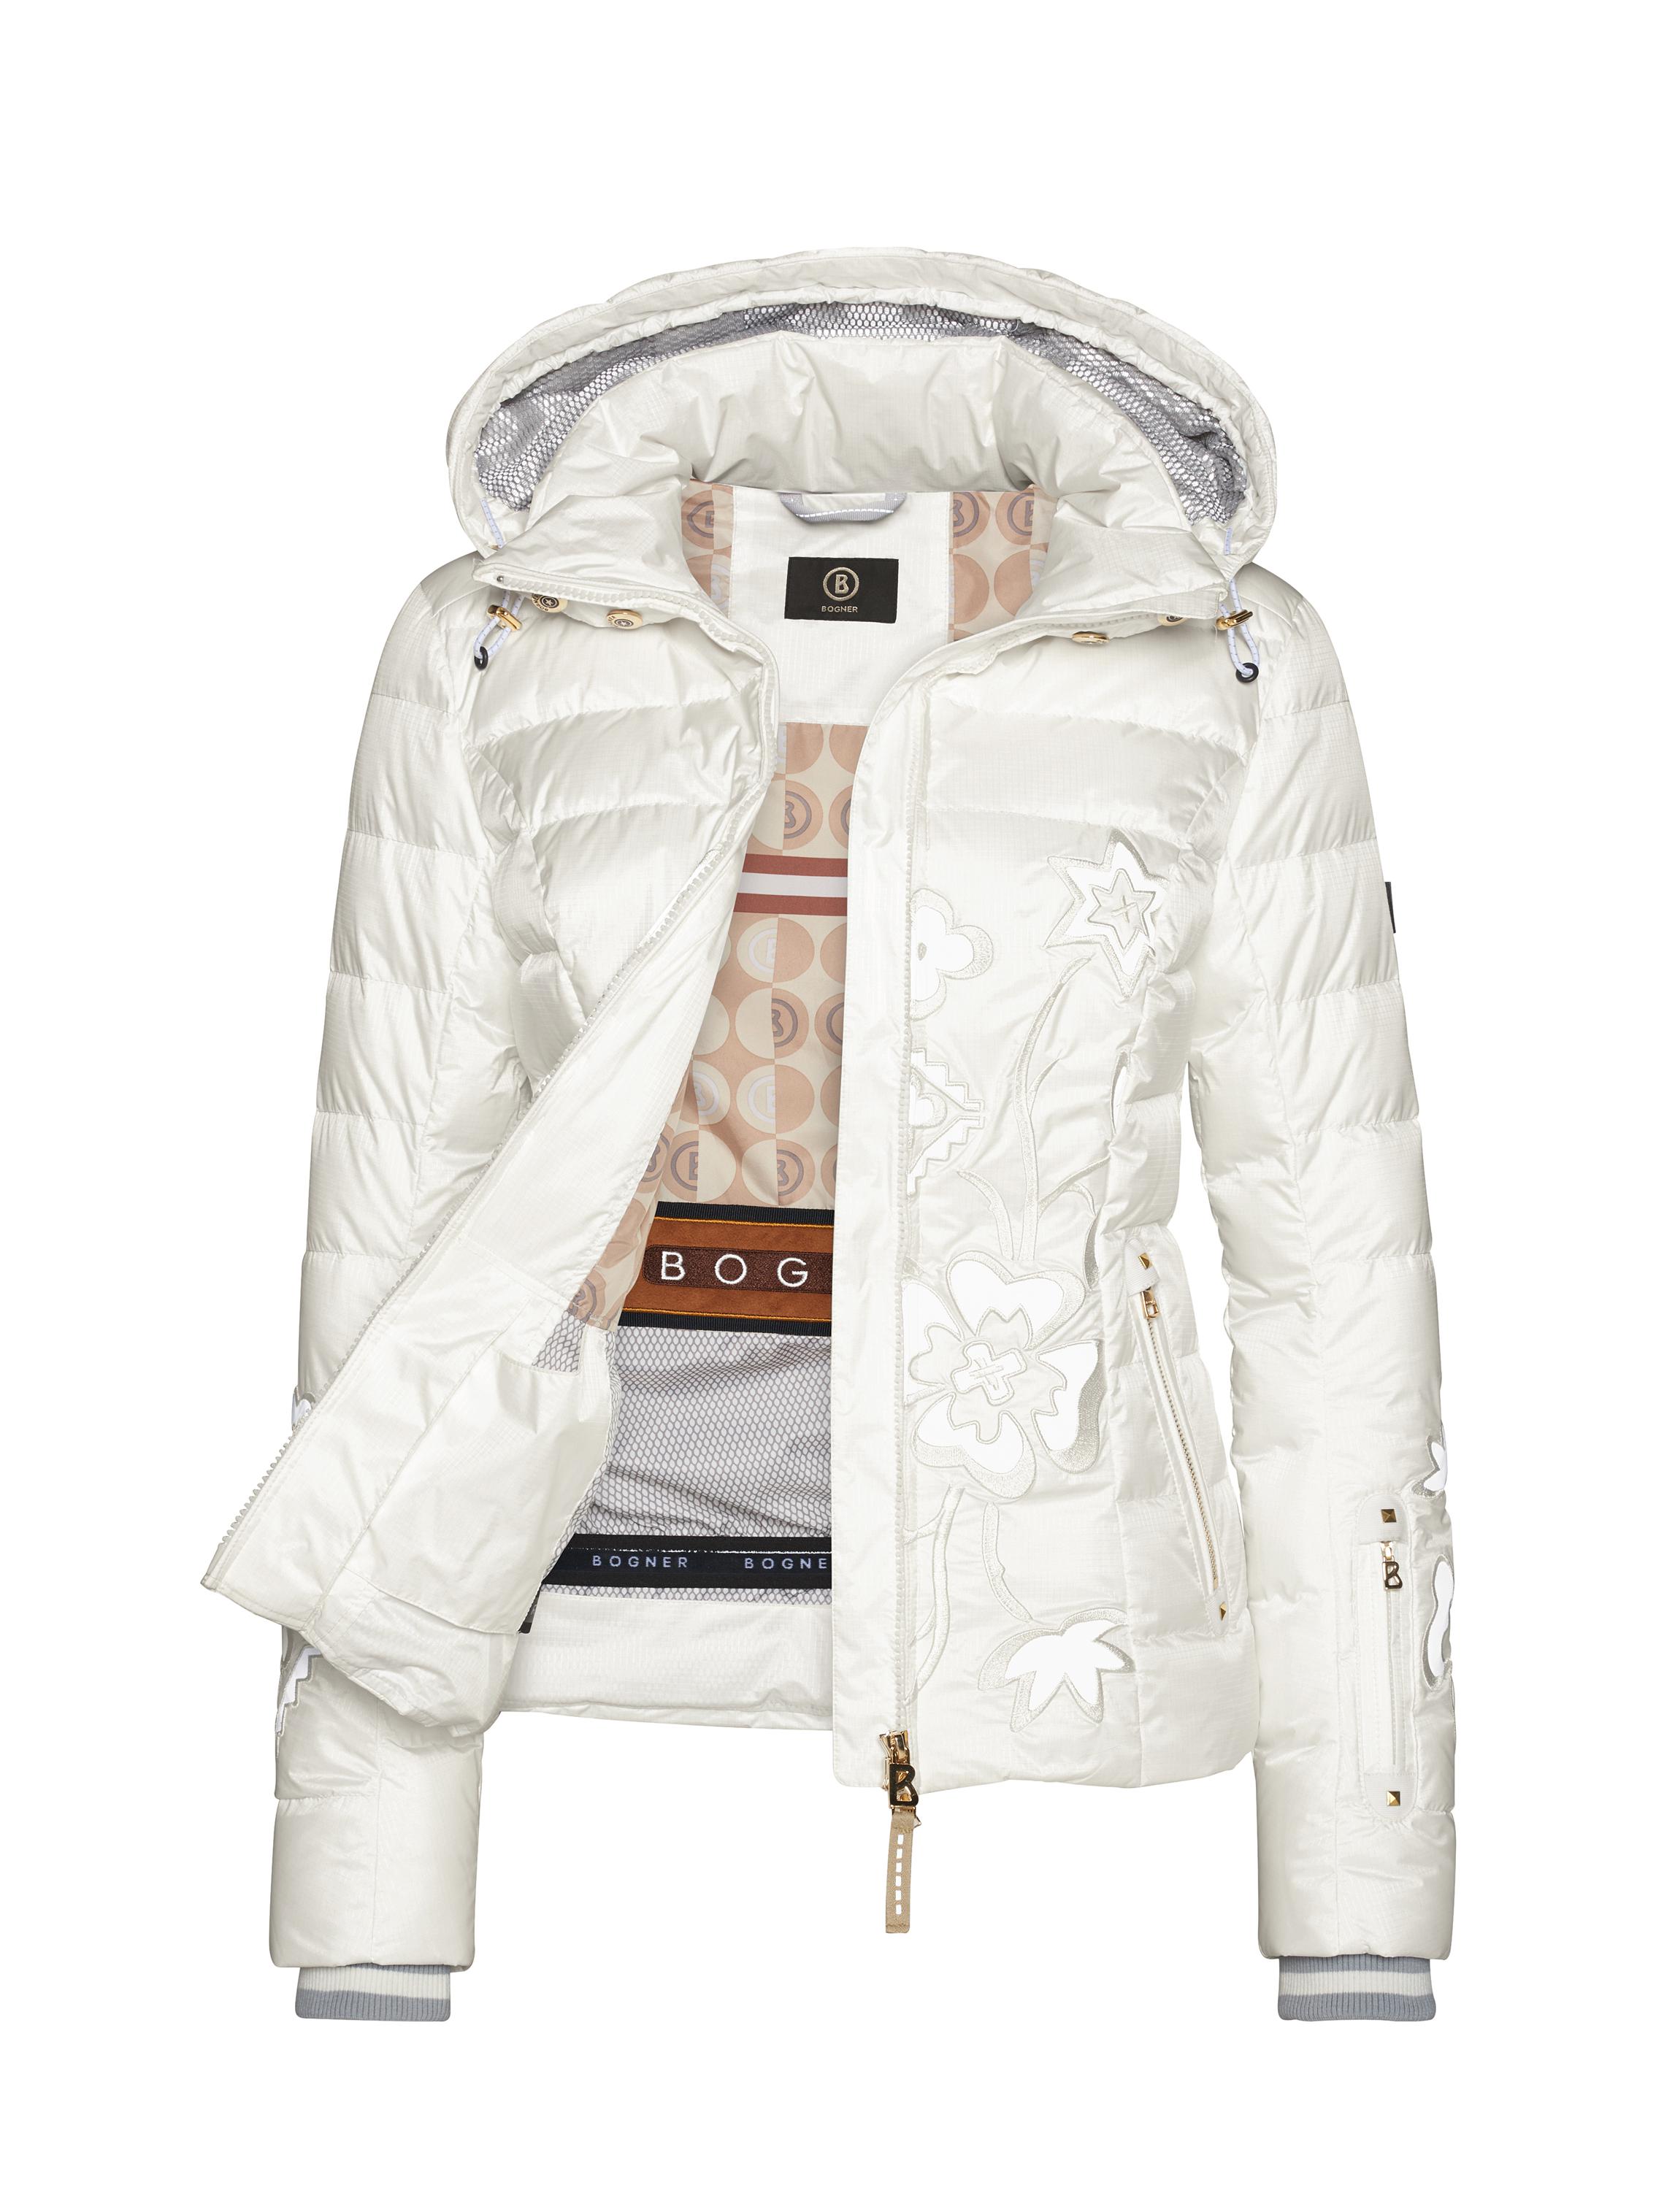 Bogner White Ski Jacket Flash Sales, UP TO 52% OFF | www.apmusicales.com